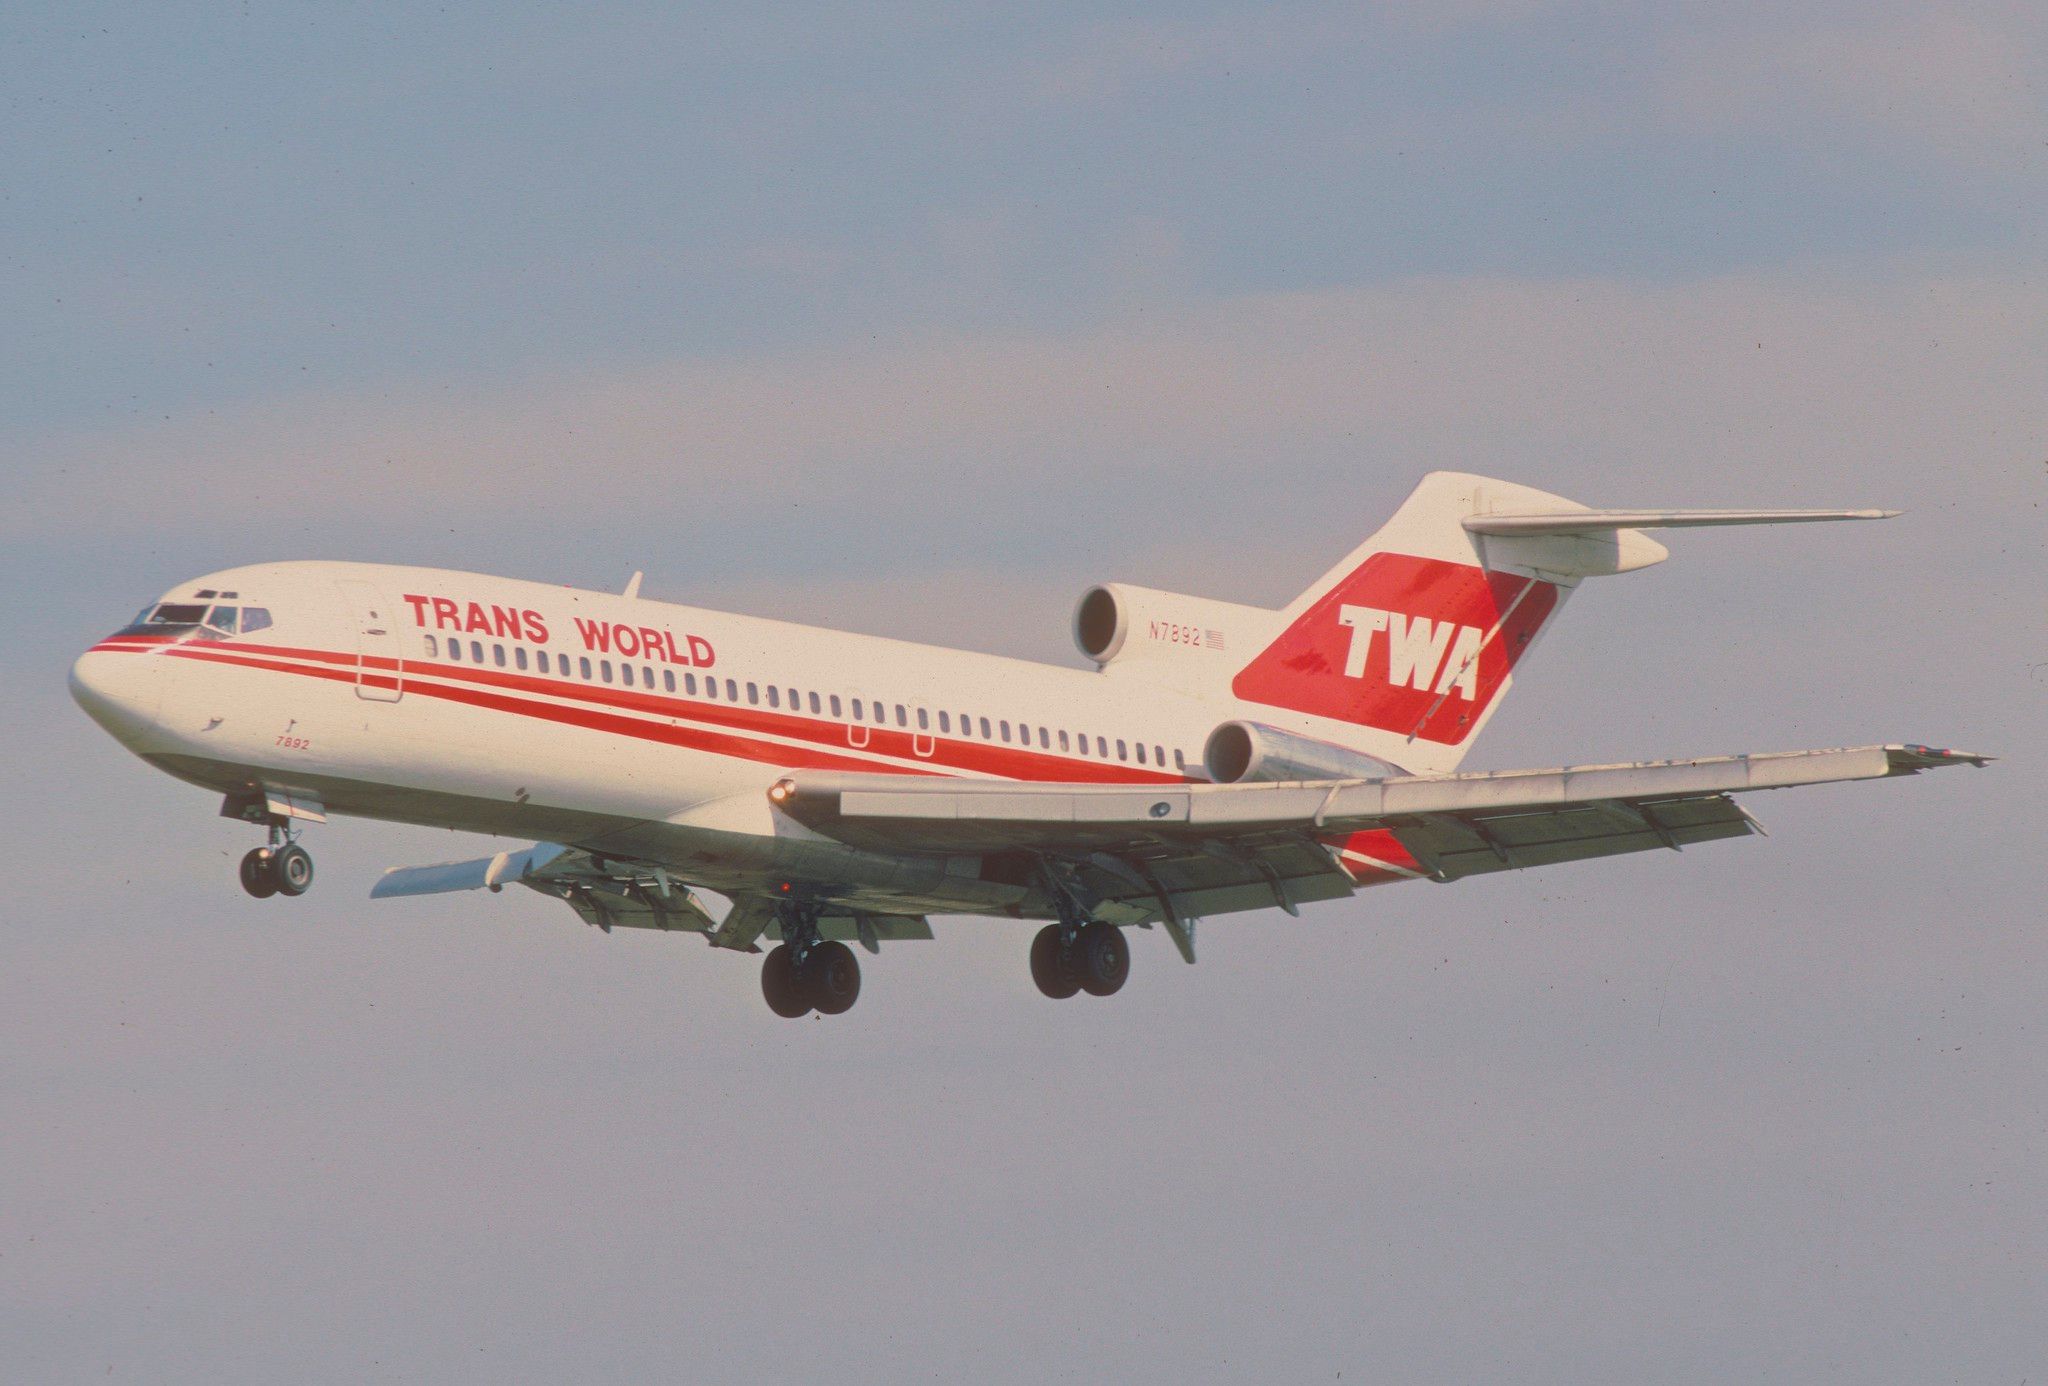 TWA 843